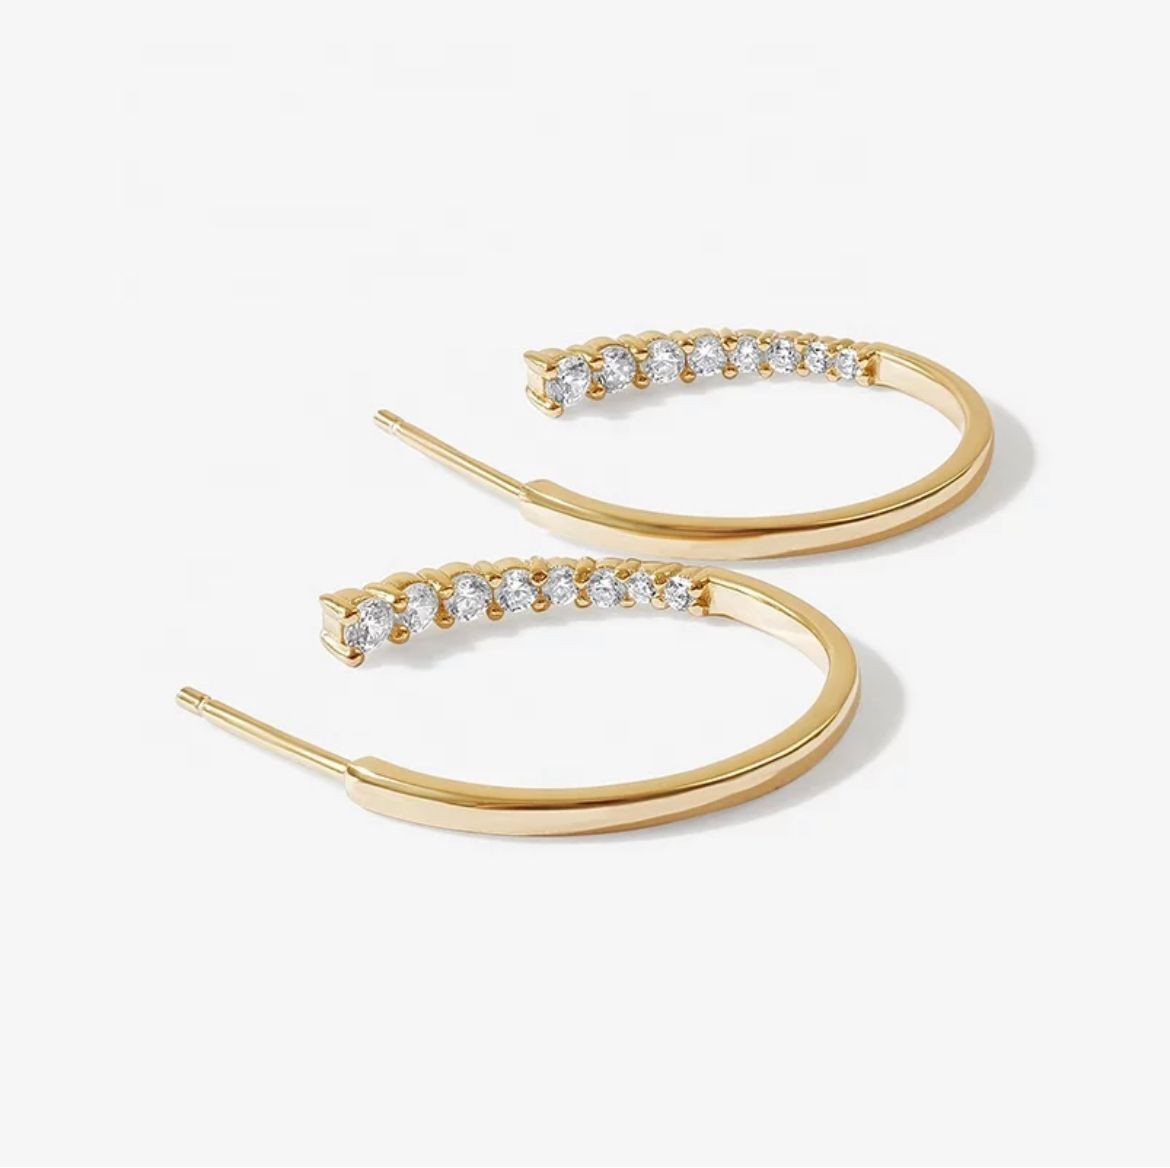 Golden J Hoop Earrings/18K Yellow Gold & Premium Cubic Zirconia - InfinityXInfinity